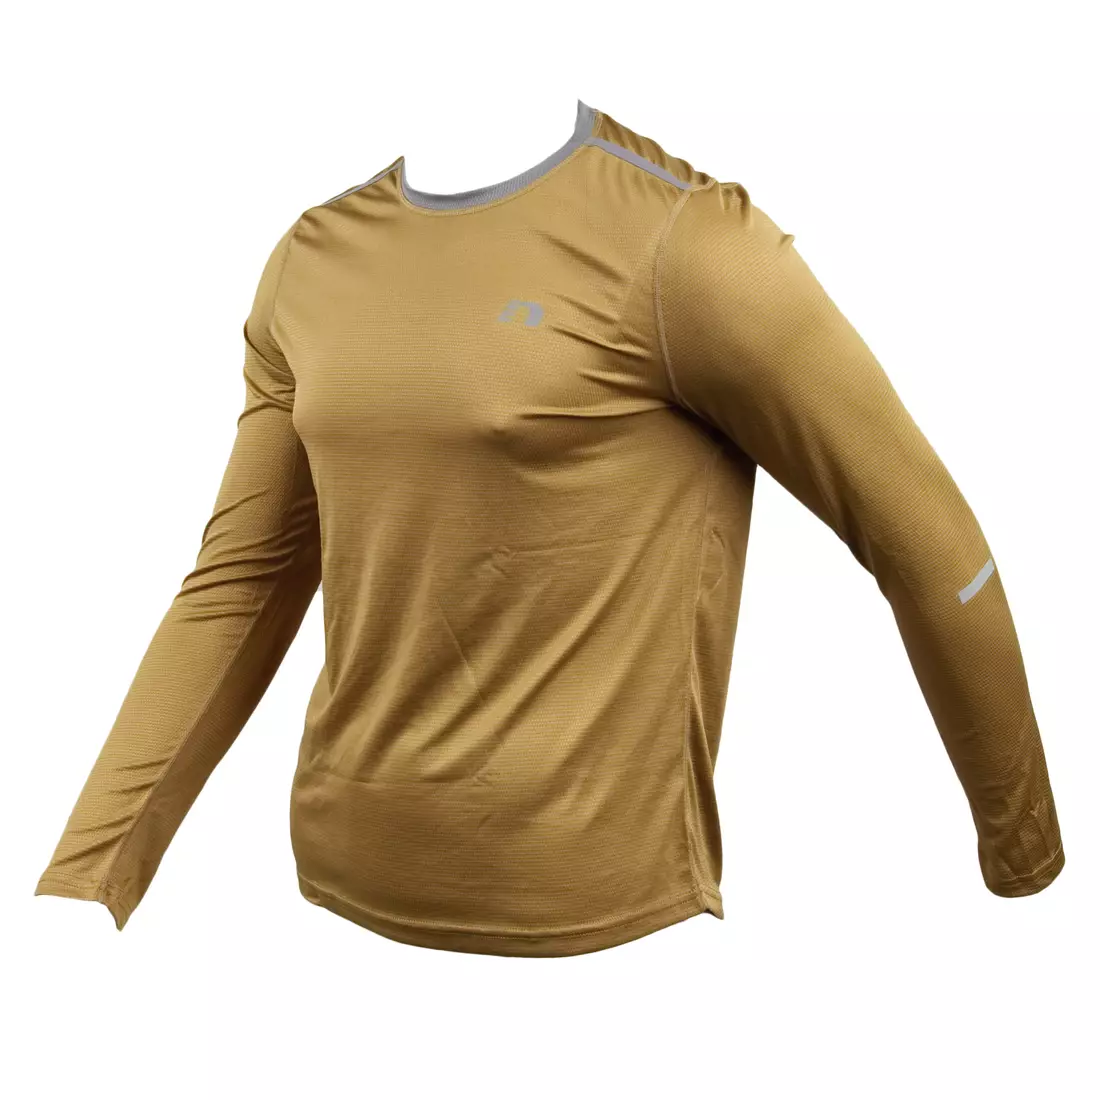 NEWLINE IMOTION LS SIHRT - men's running T-shirt, long sleeve, 11312-575